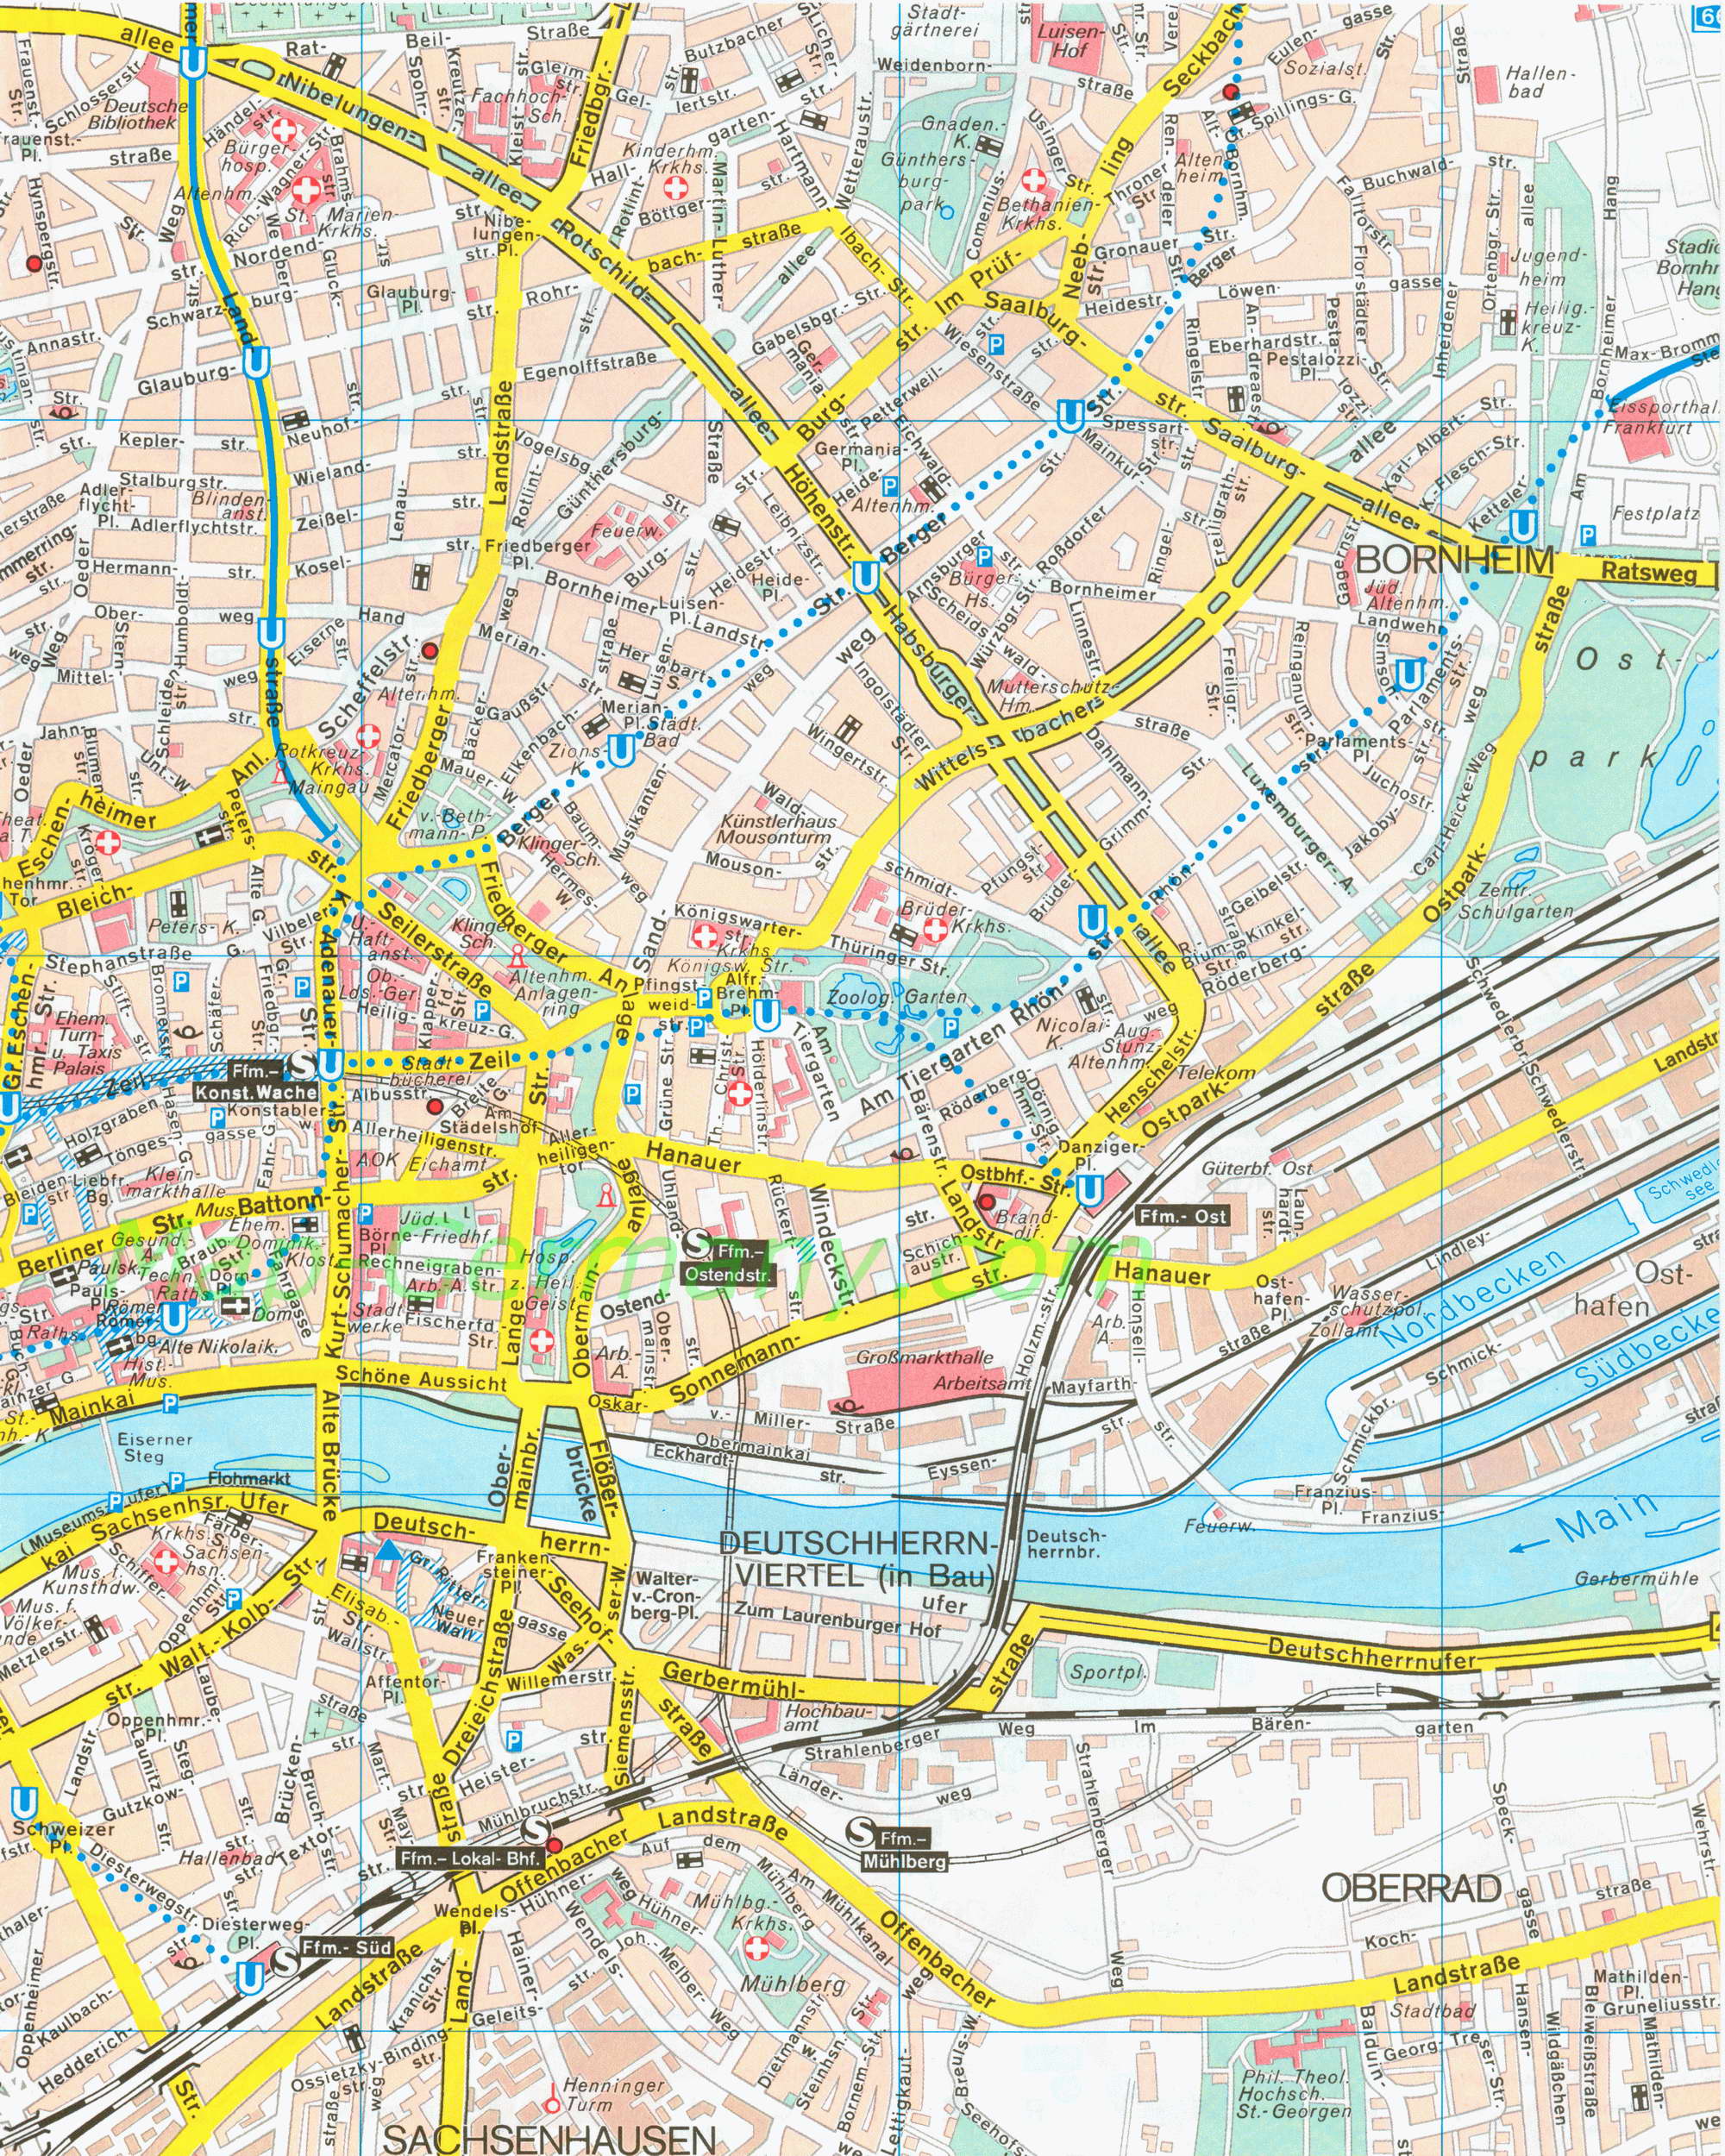 Карта улиц Франкфурта. Подробная карта улиц Франкфурта масштаба 1см:150м, B0 - 